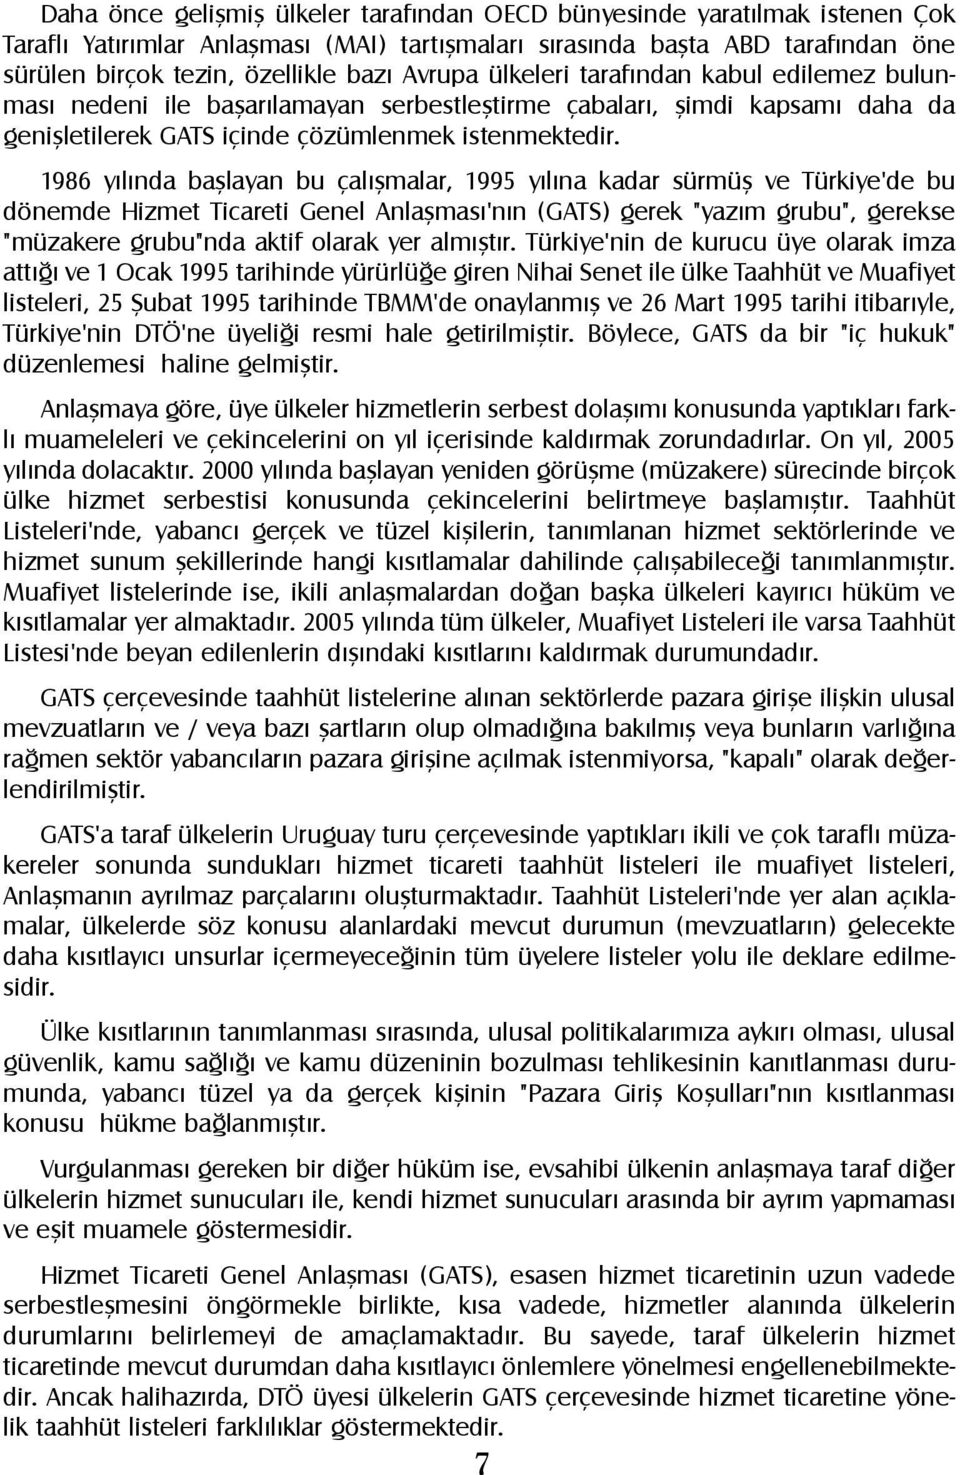 1986 yýlýnda baþlayan bu çalýþmalar, 1995 yýlýna kadar sürmüþ ve Türkiye'de bu dönemde Hizmet Ticareti Genel Anlaþmasý'nýn (GATS) gerek "yazým grubu", gerekse "müzakere grubu"nda aktif olarak yer